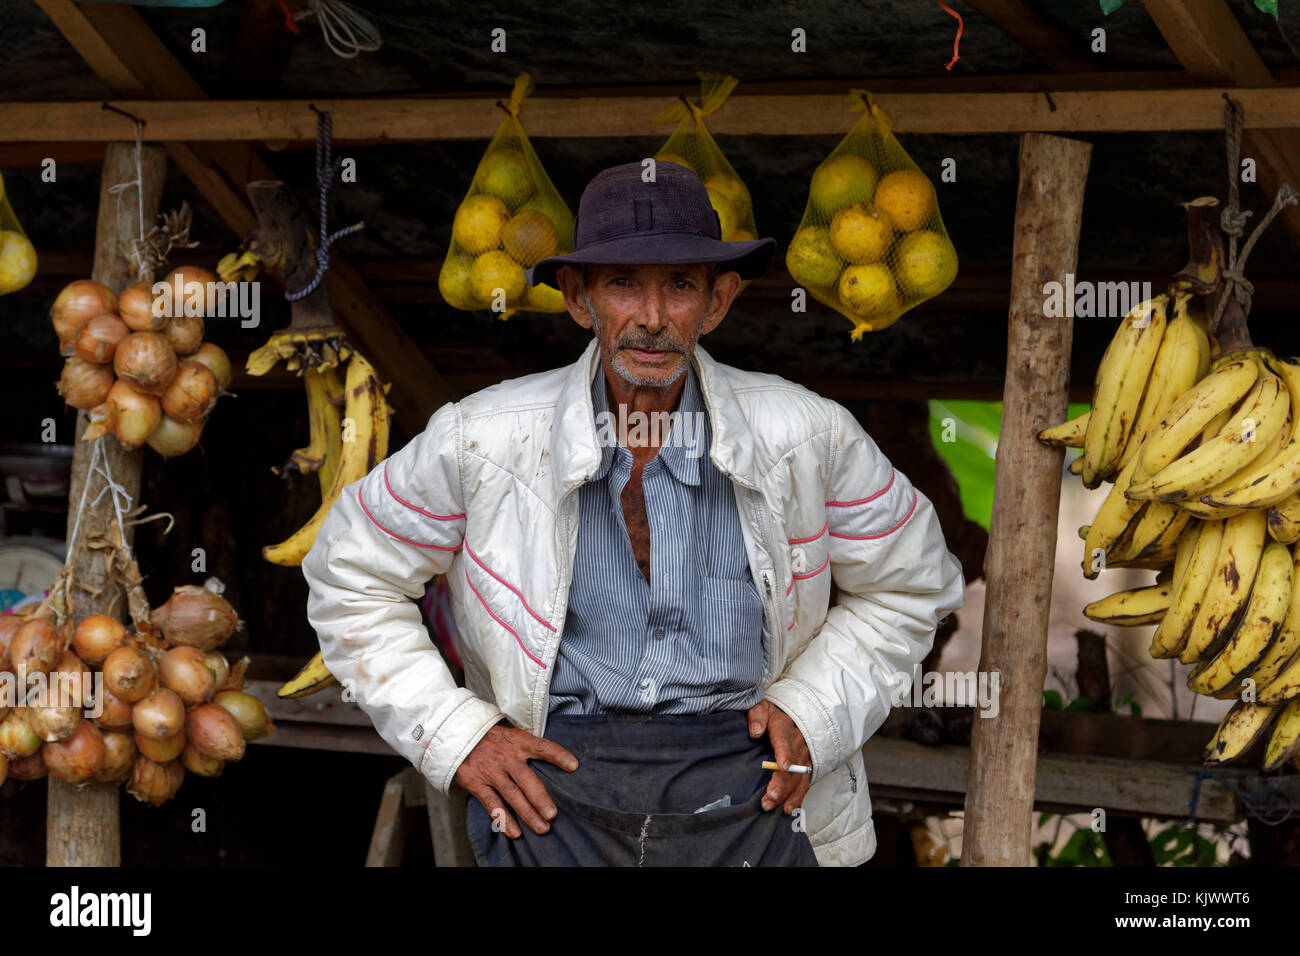 Ein alter Mann verkauft frisches Obst und Gemüse auf der Straße. Auch wenn sein Laden sehr schlecht aussah, war der Mann sehr freundlich. Ich kaufte mir Bananen und bat um ein Foto, das er erlaubte. Er lachte, als er das Ergebnis sah. Stockfoto